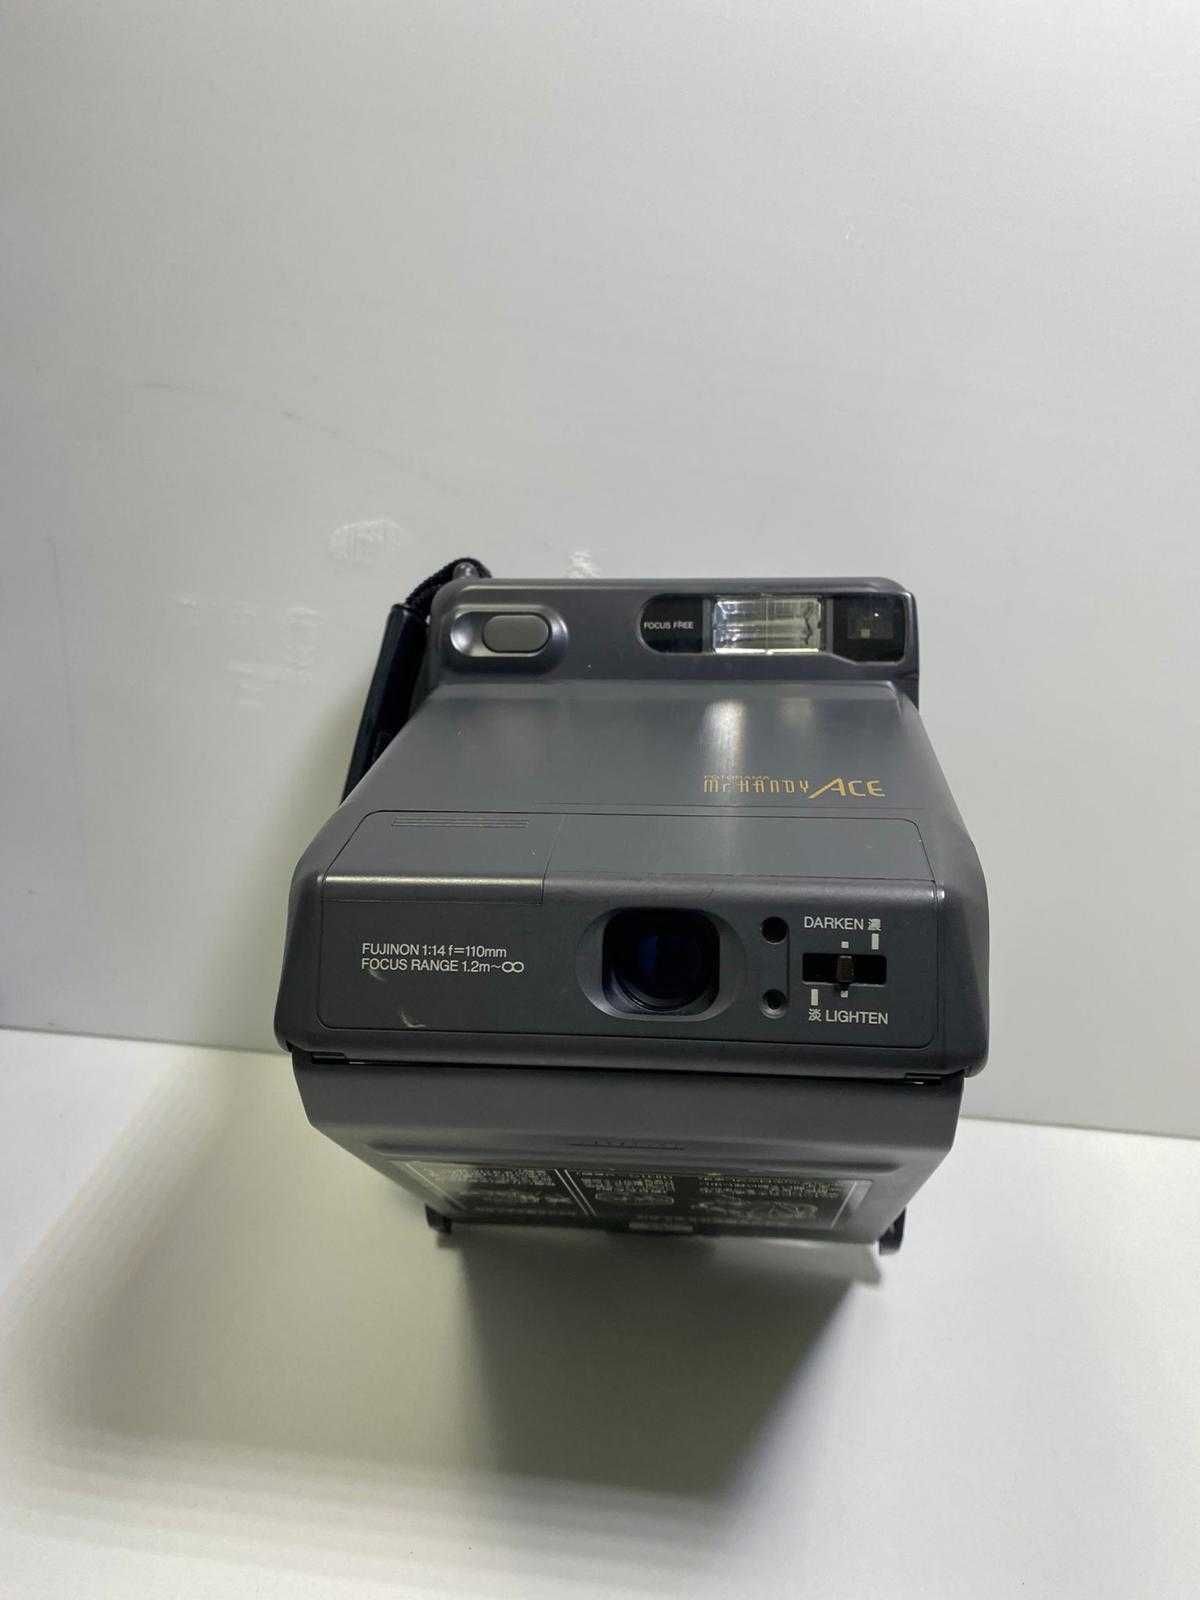 Fujifilm Fotorama Mr. Handy ACE